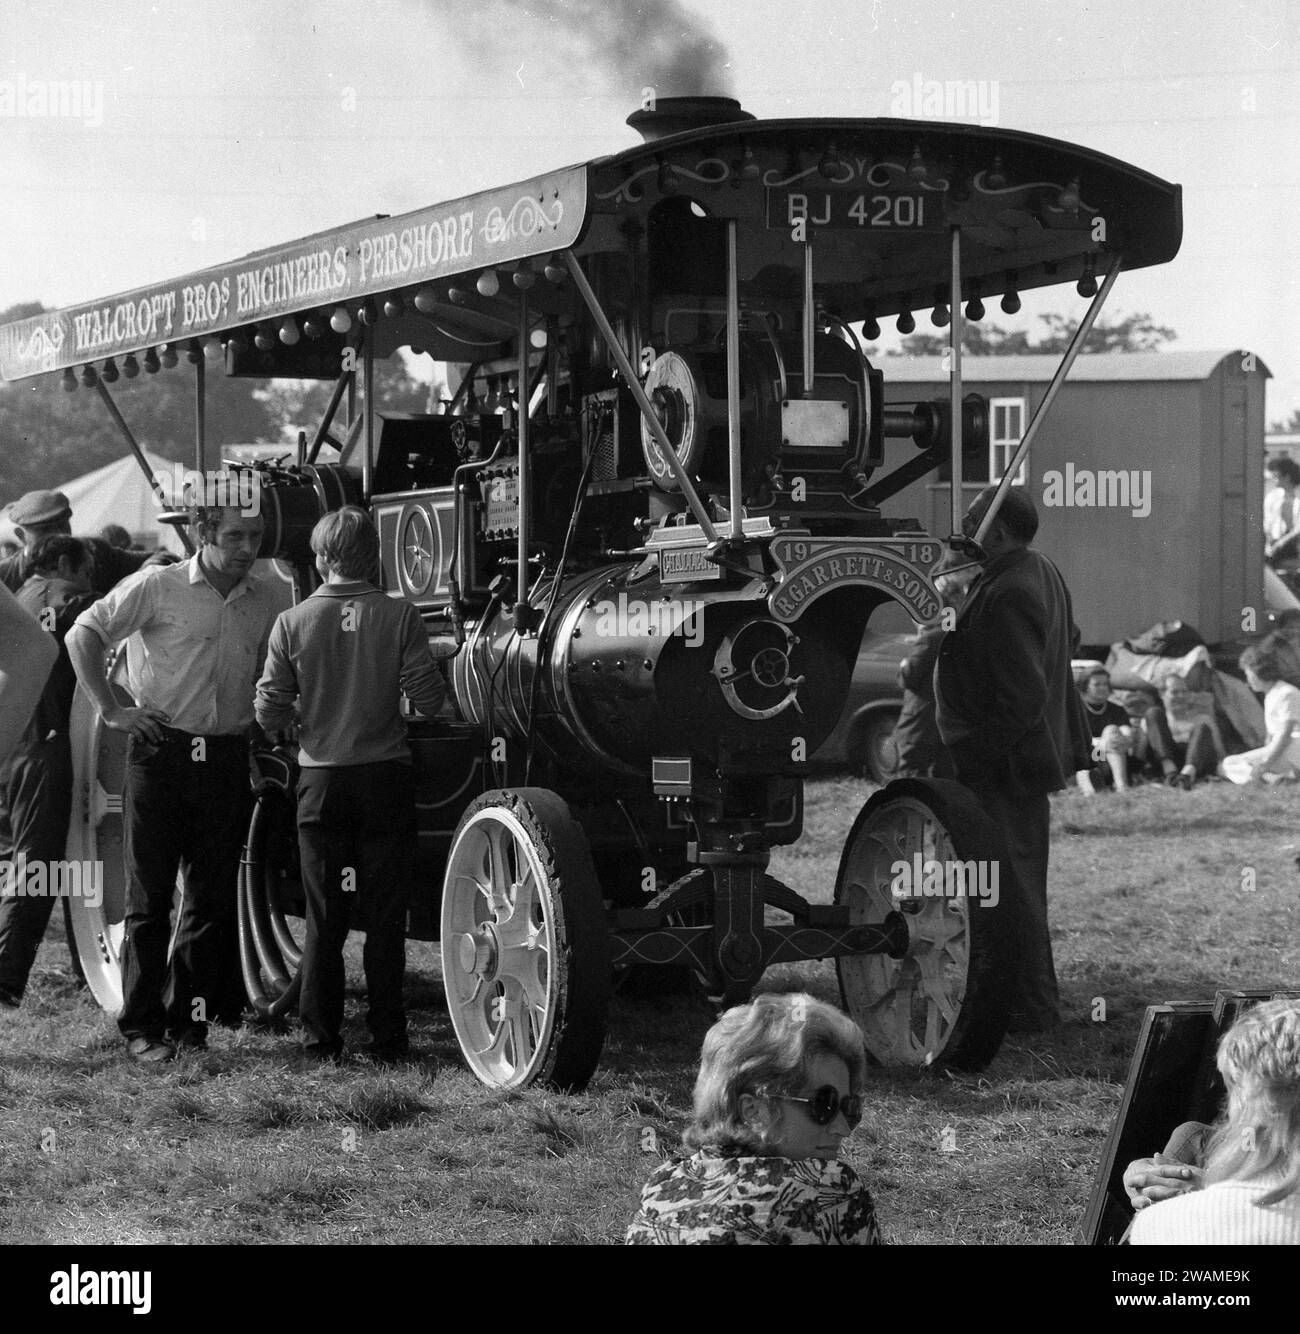 Années 1970, historique, tracteur à vapeur à l'extérieur à une foire de la vapeur, plaque signalétique sur le devant R. Garrett & Sons, plaque d'immatriculation BJ 4201 datant de 1919, connue sous le nom de Challenge. Ingénieurs agronomes du Suffolk, Angleterre, Richard Garrett & Sons étaient célèbres comme constructeurs de machines à vapeur et de tracteurs. Banque D'Images